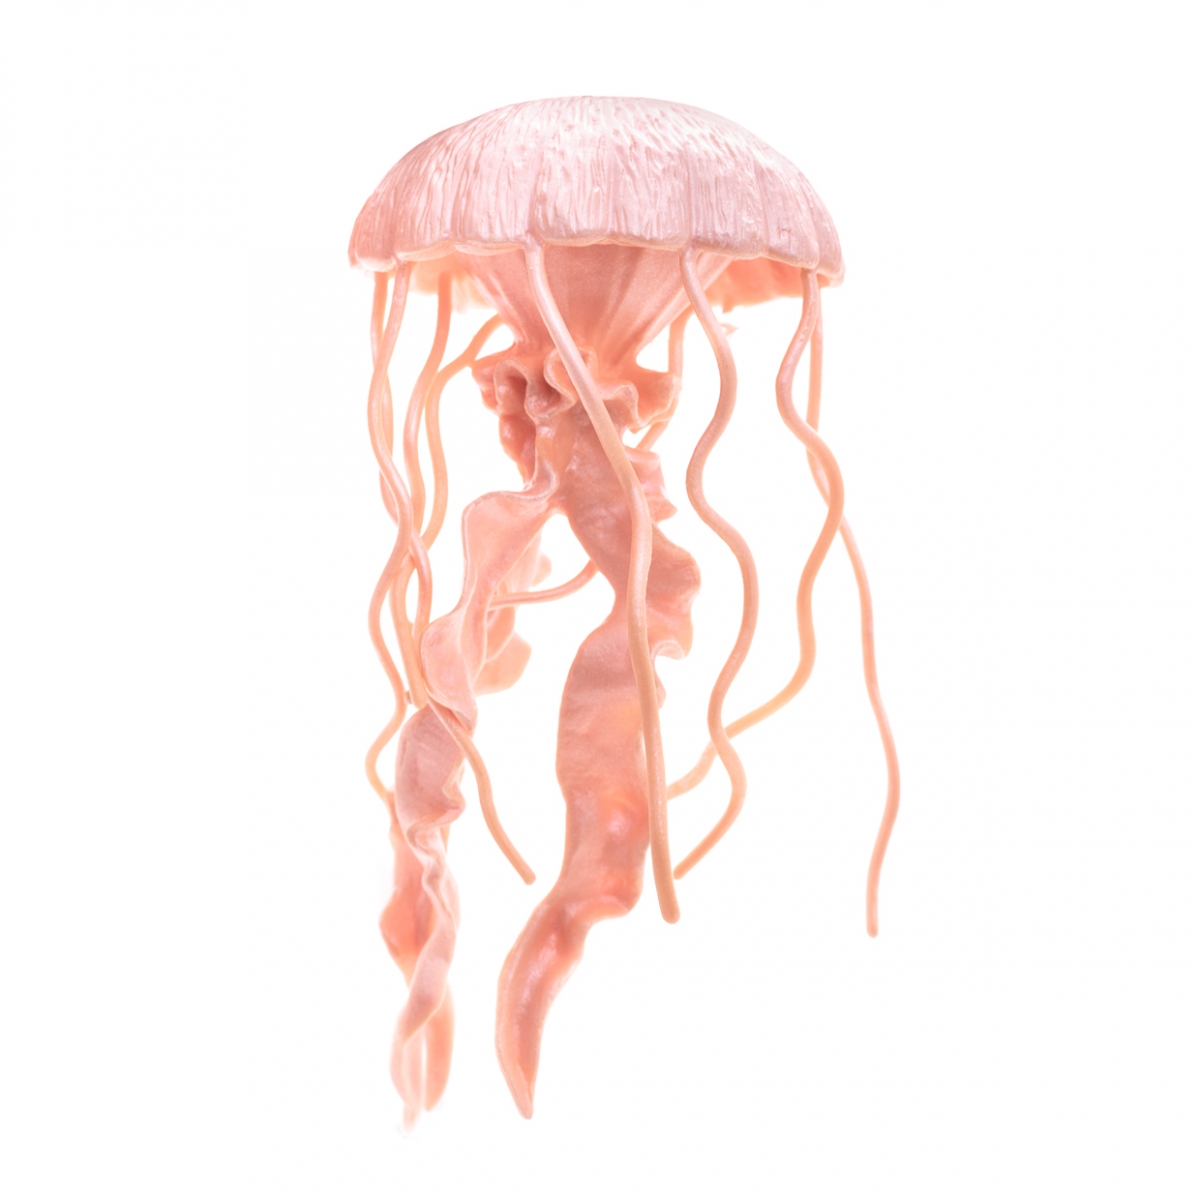 Imagen en la que se ve una medusa